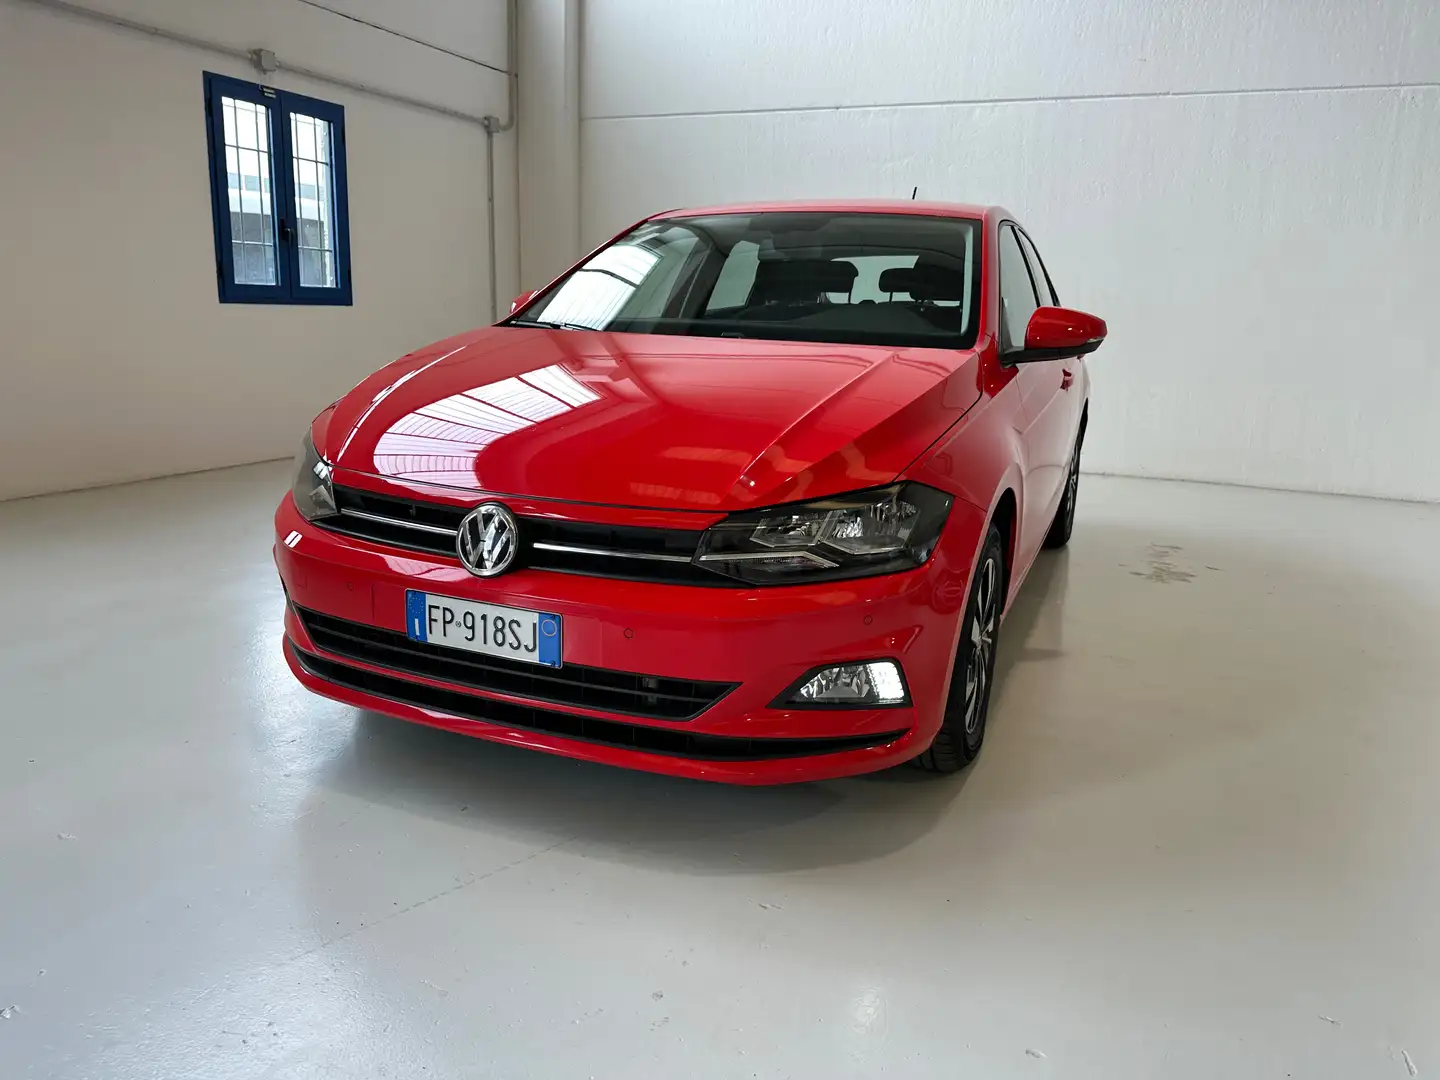 usato Volkswagen Polo Berlina a Pompiano - Bs per € 15.890,-